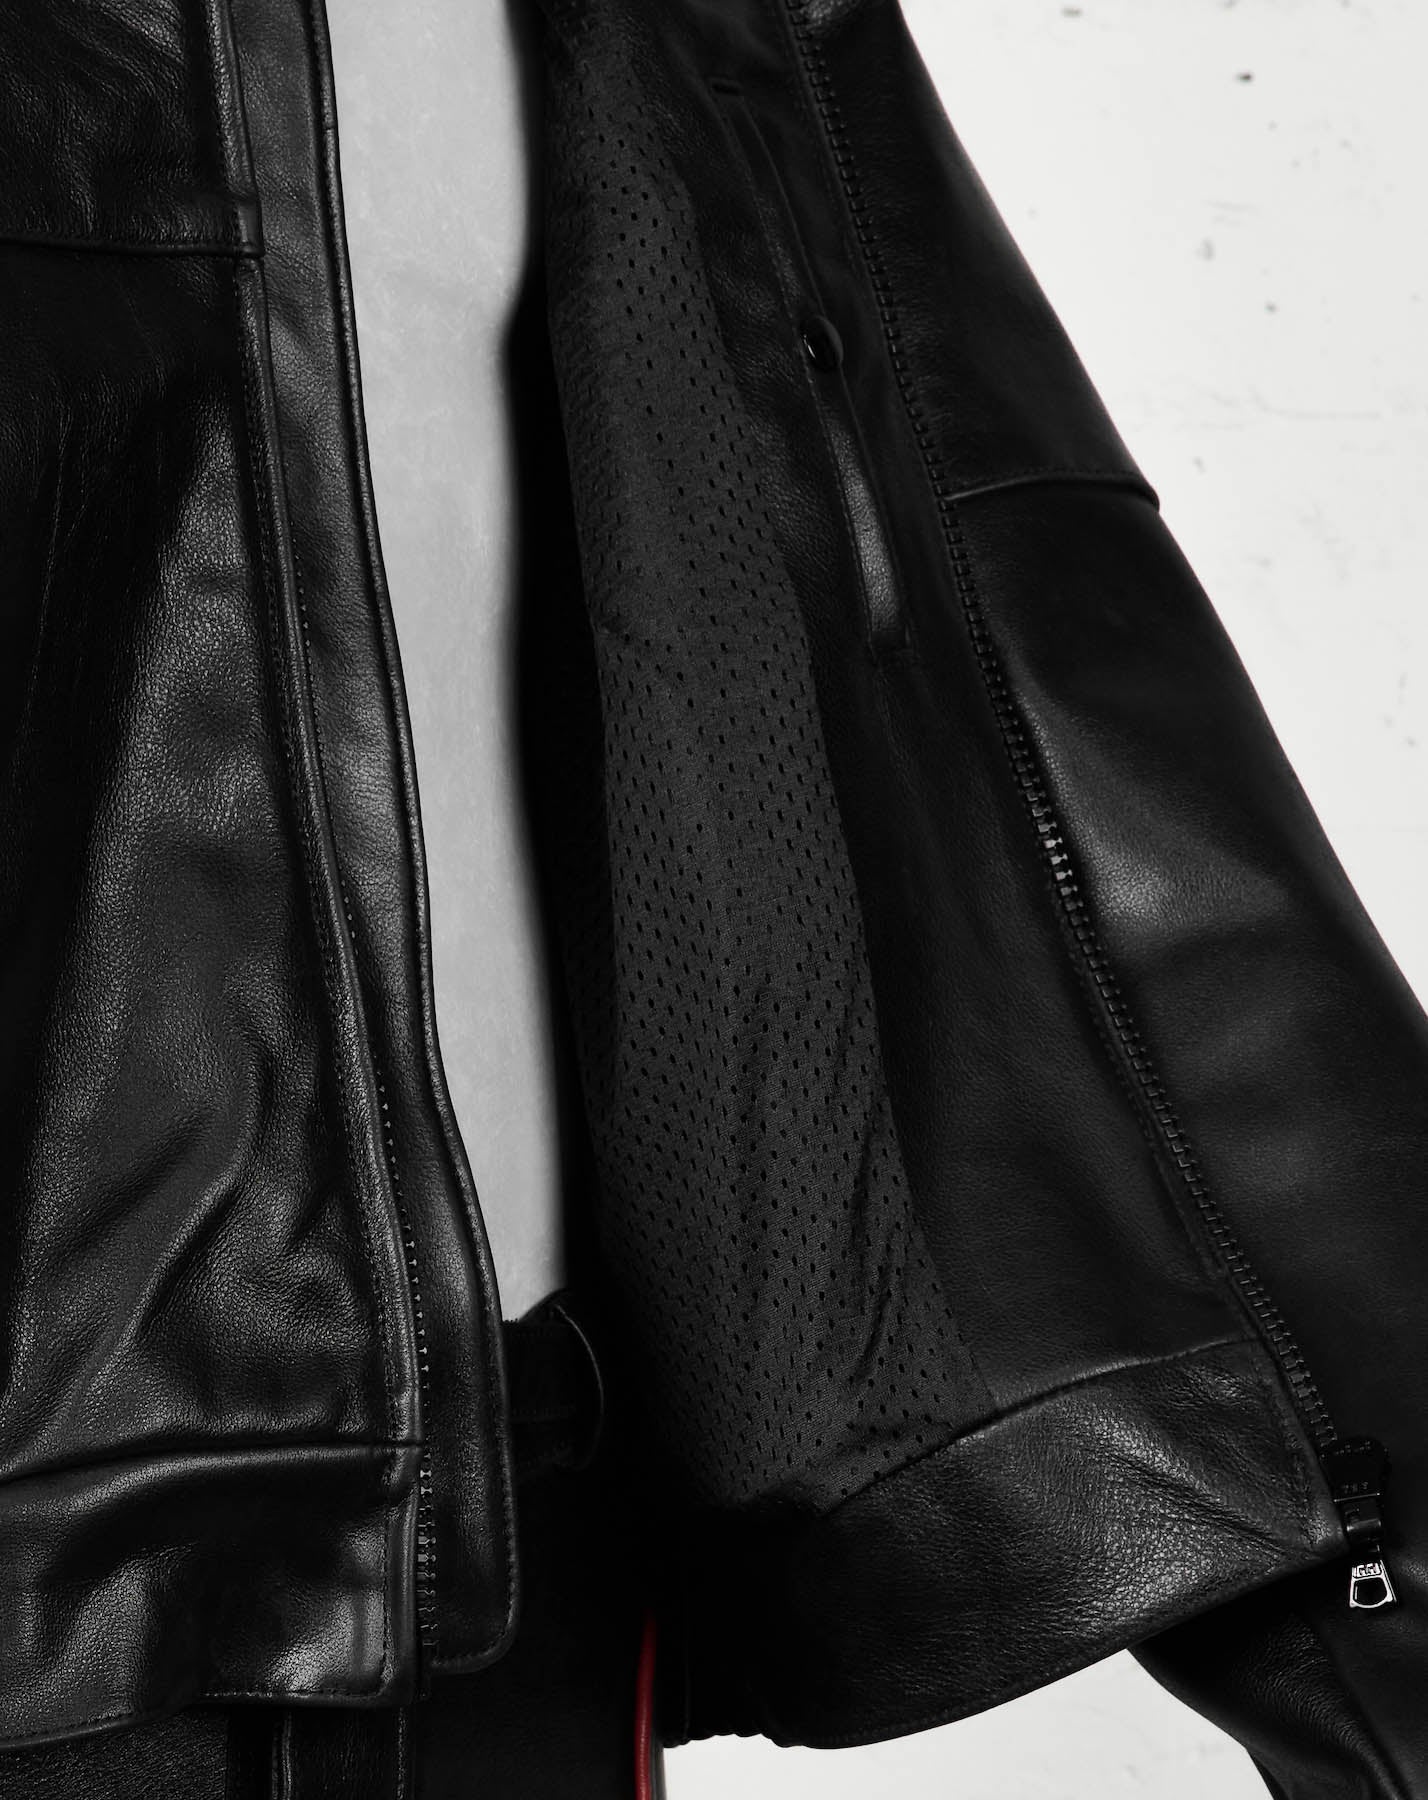 Jaron Baker Leather Jacket Studio Side Detail